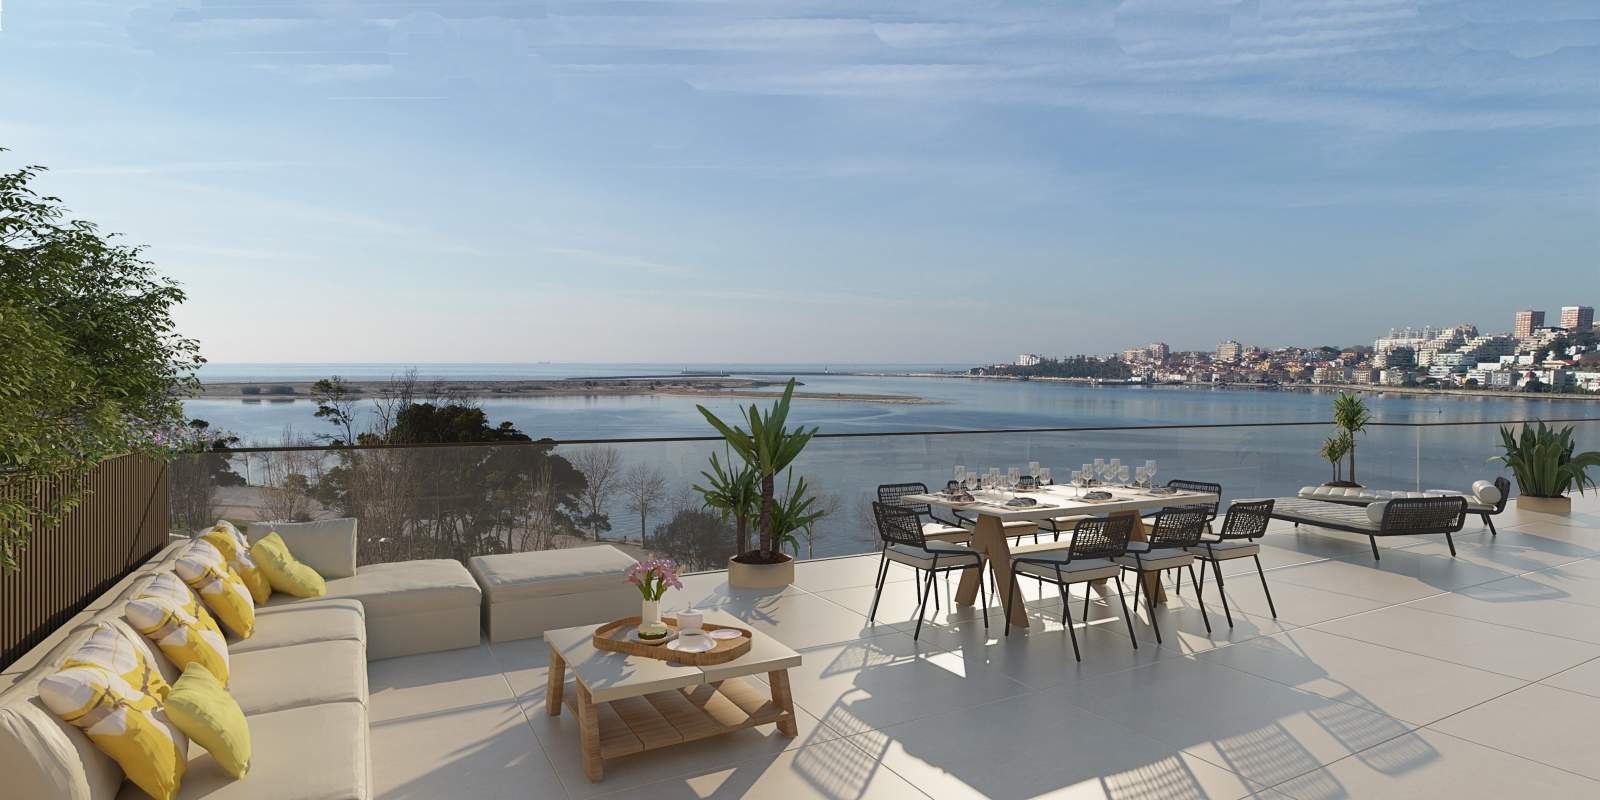 Wohnung zu verkaufen mit Terrasse, in exklusiver Wohnanlage, V. N. Gaia, Porto, Portugal_175437